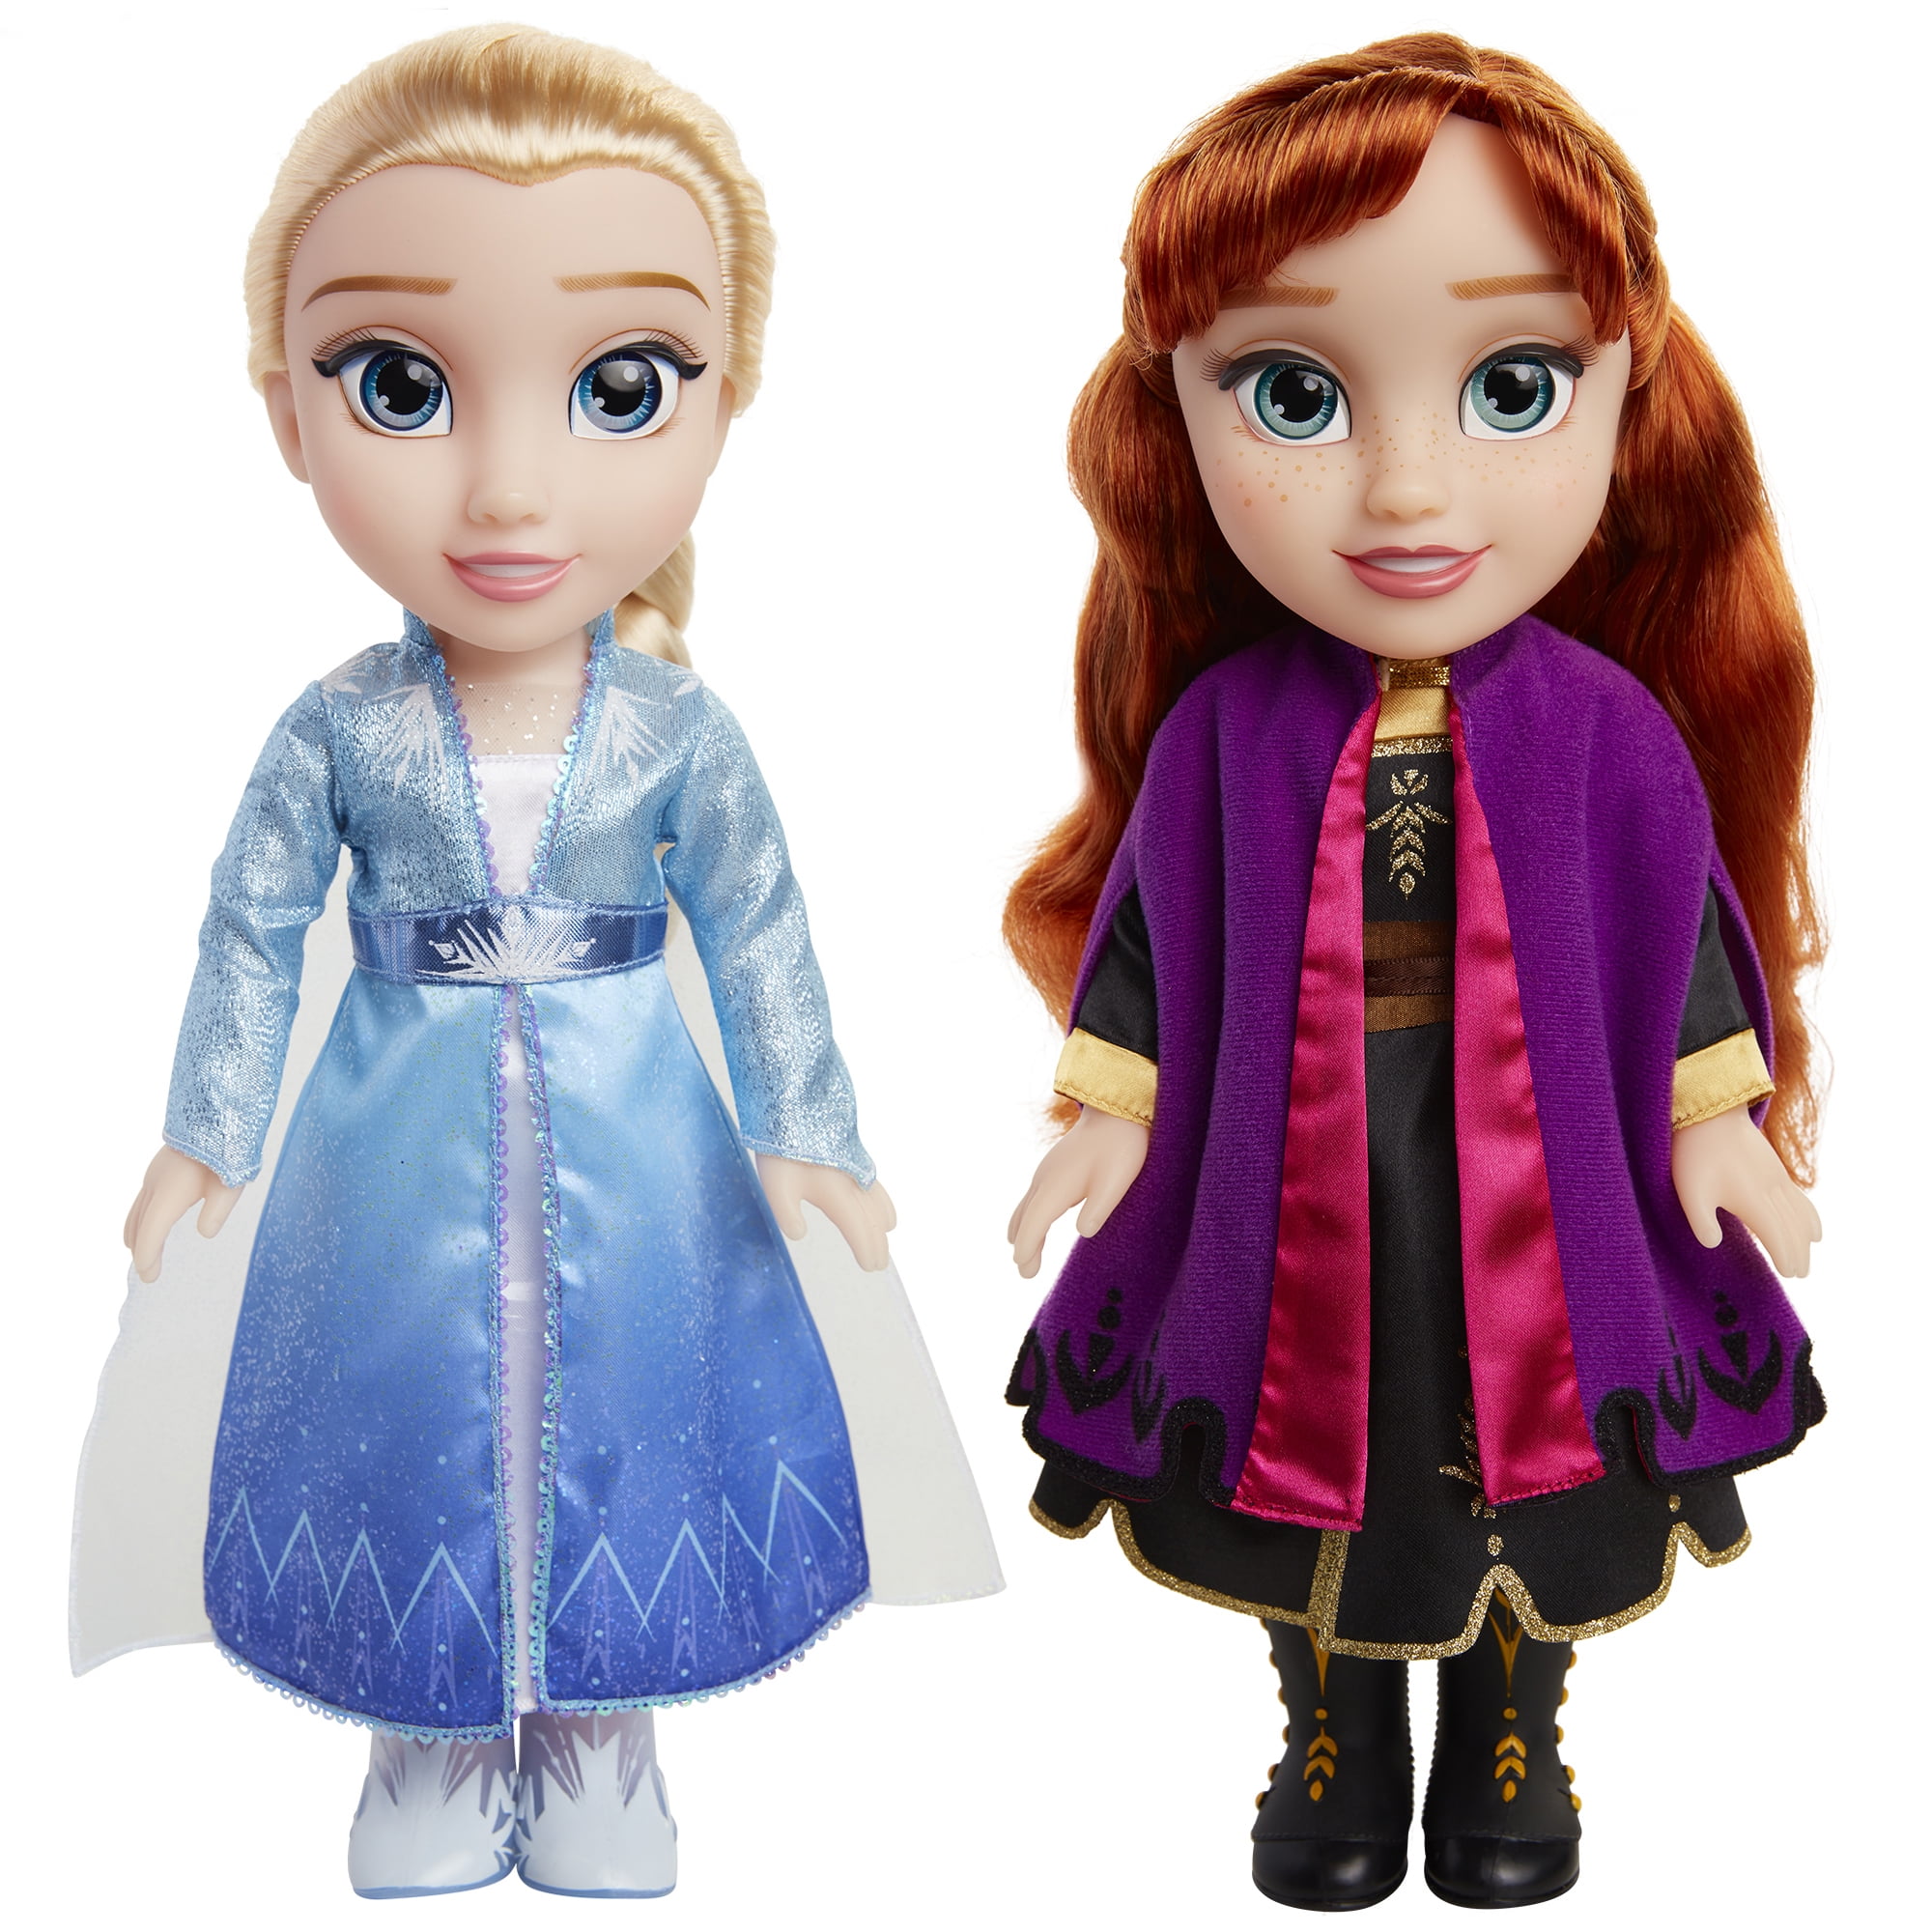 Disney Frozen Poupées « Singing Sisters » Les soeurs chantantes